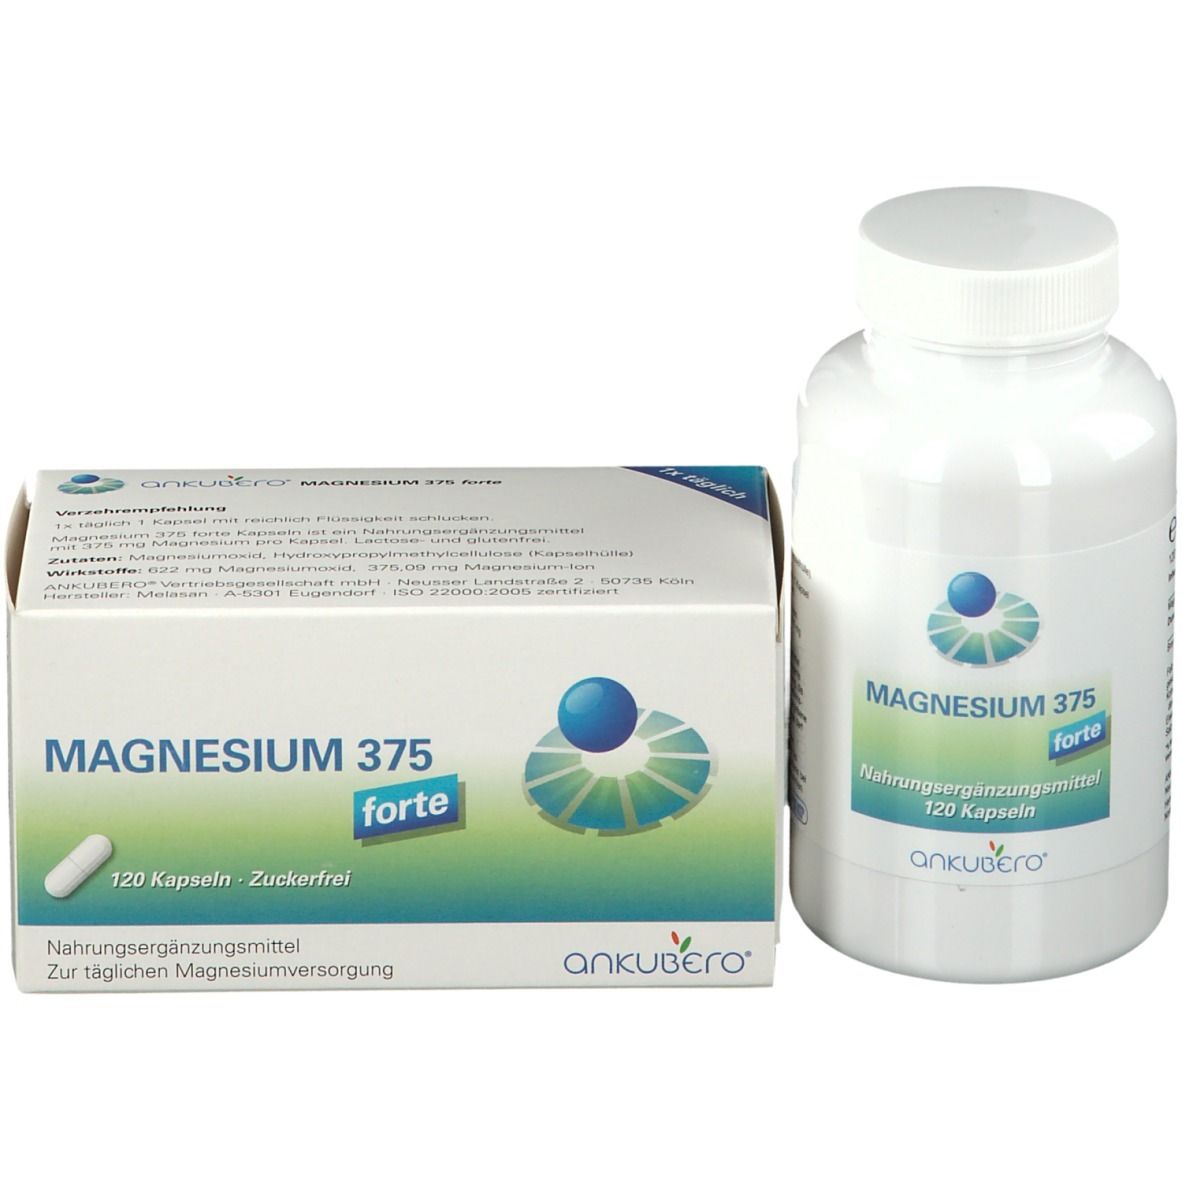 Magnesium 375 forte